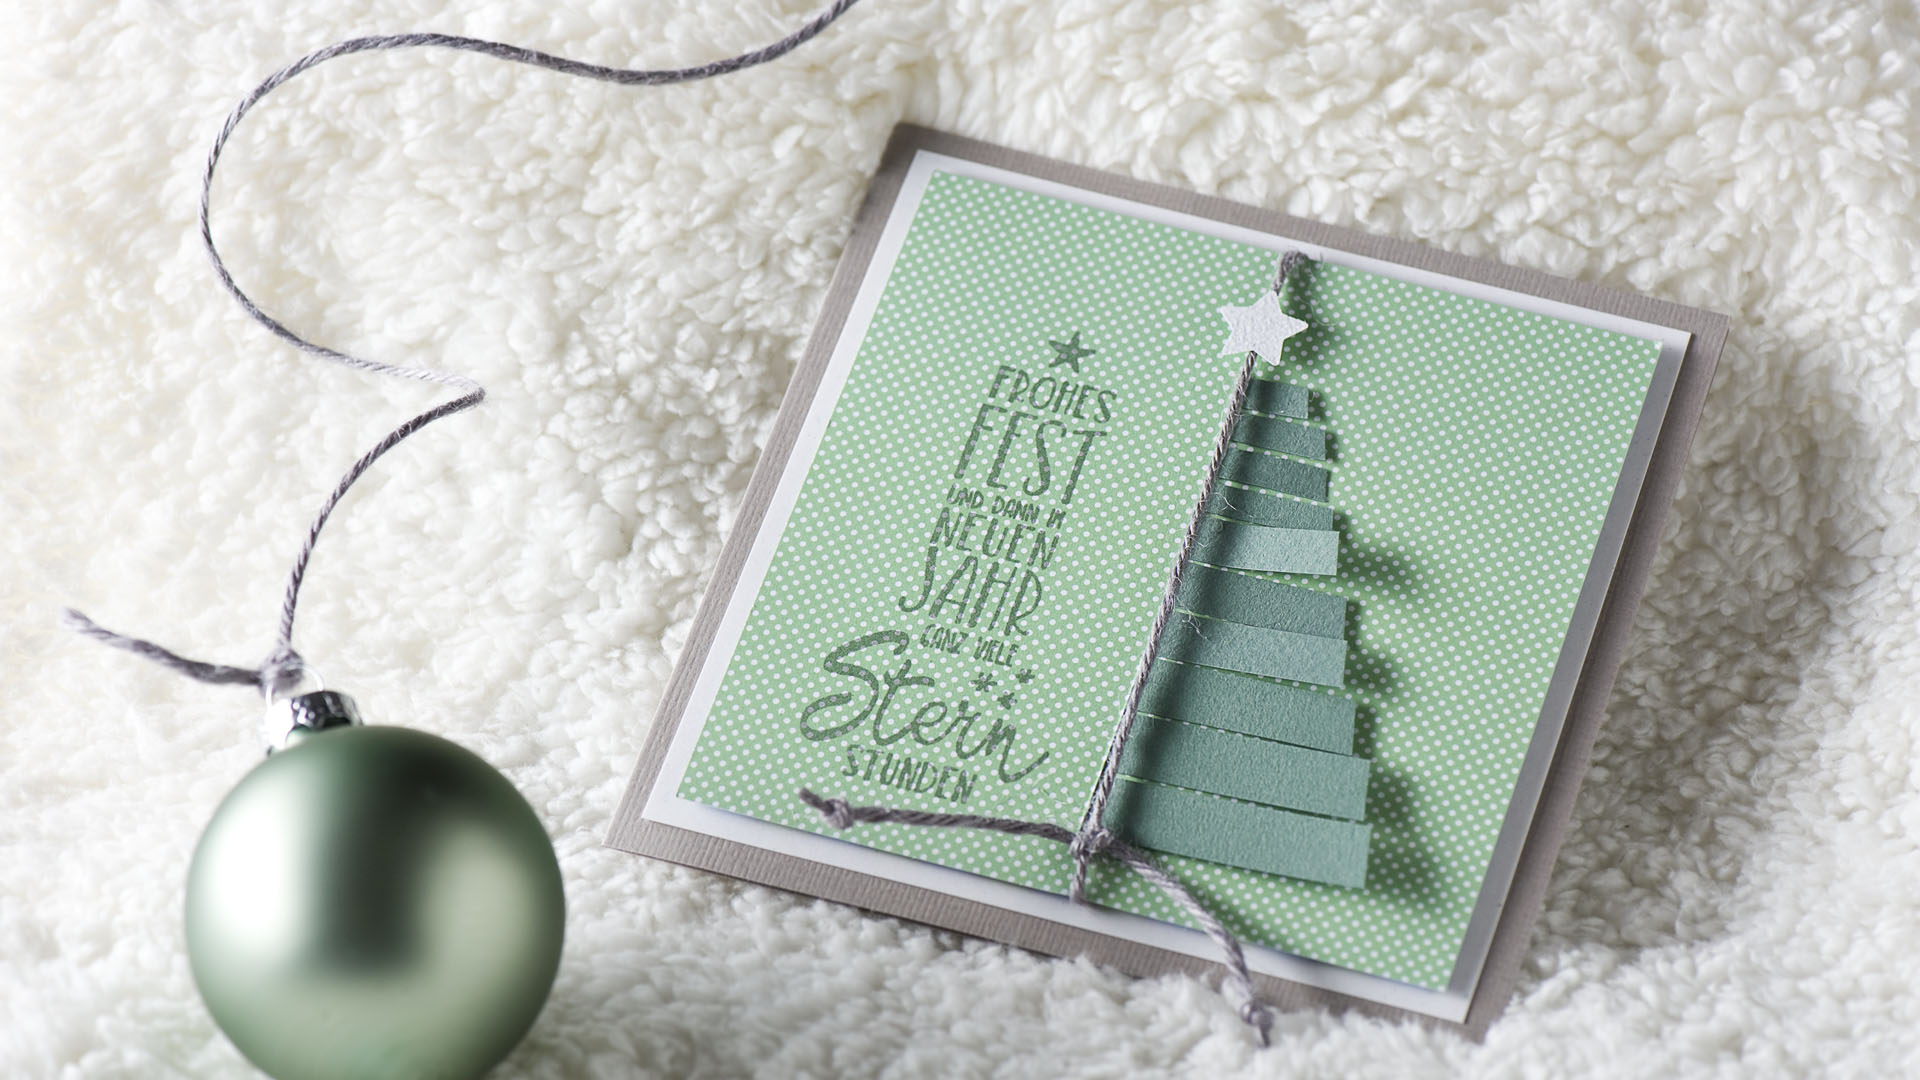 Ideen für die Weihnachtpost: Die schönsten Wünsche zum Fest | eine faszinierende quadratische Weihnachtskarte in Grau, Weiß und zartem Salbeigrün mit einem Tannenbaum aus Papierstreifen und einen gestempelten Text